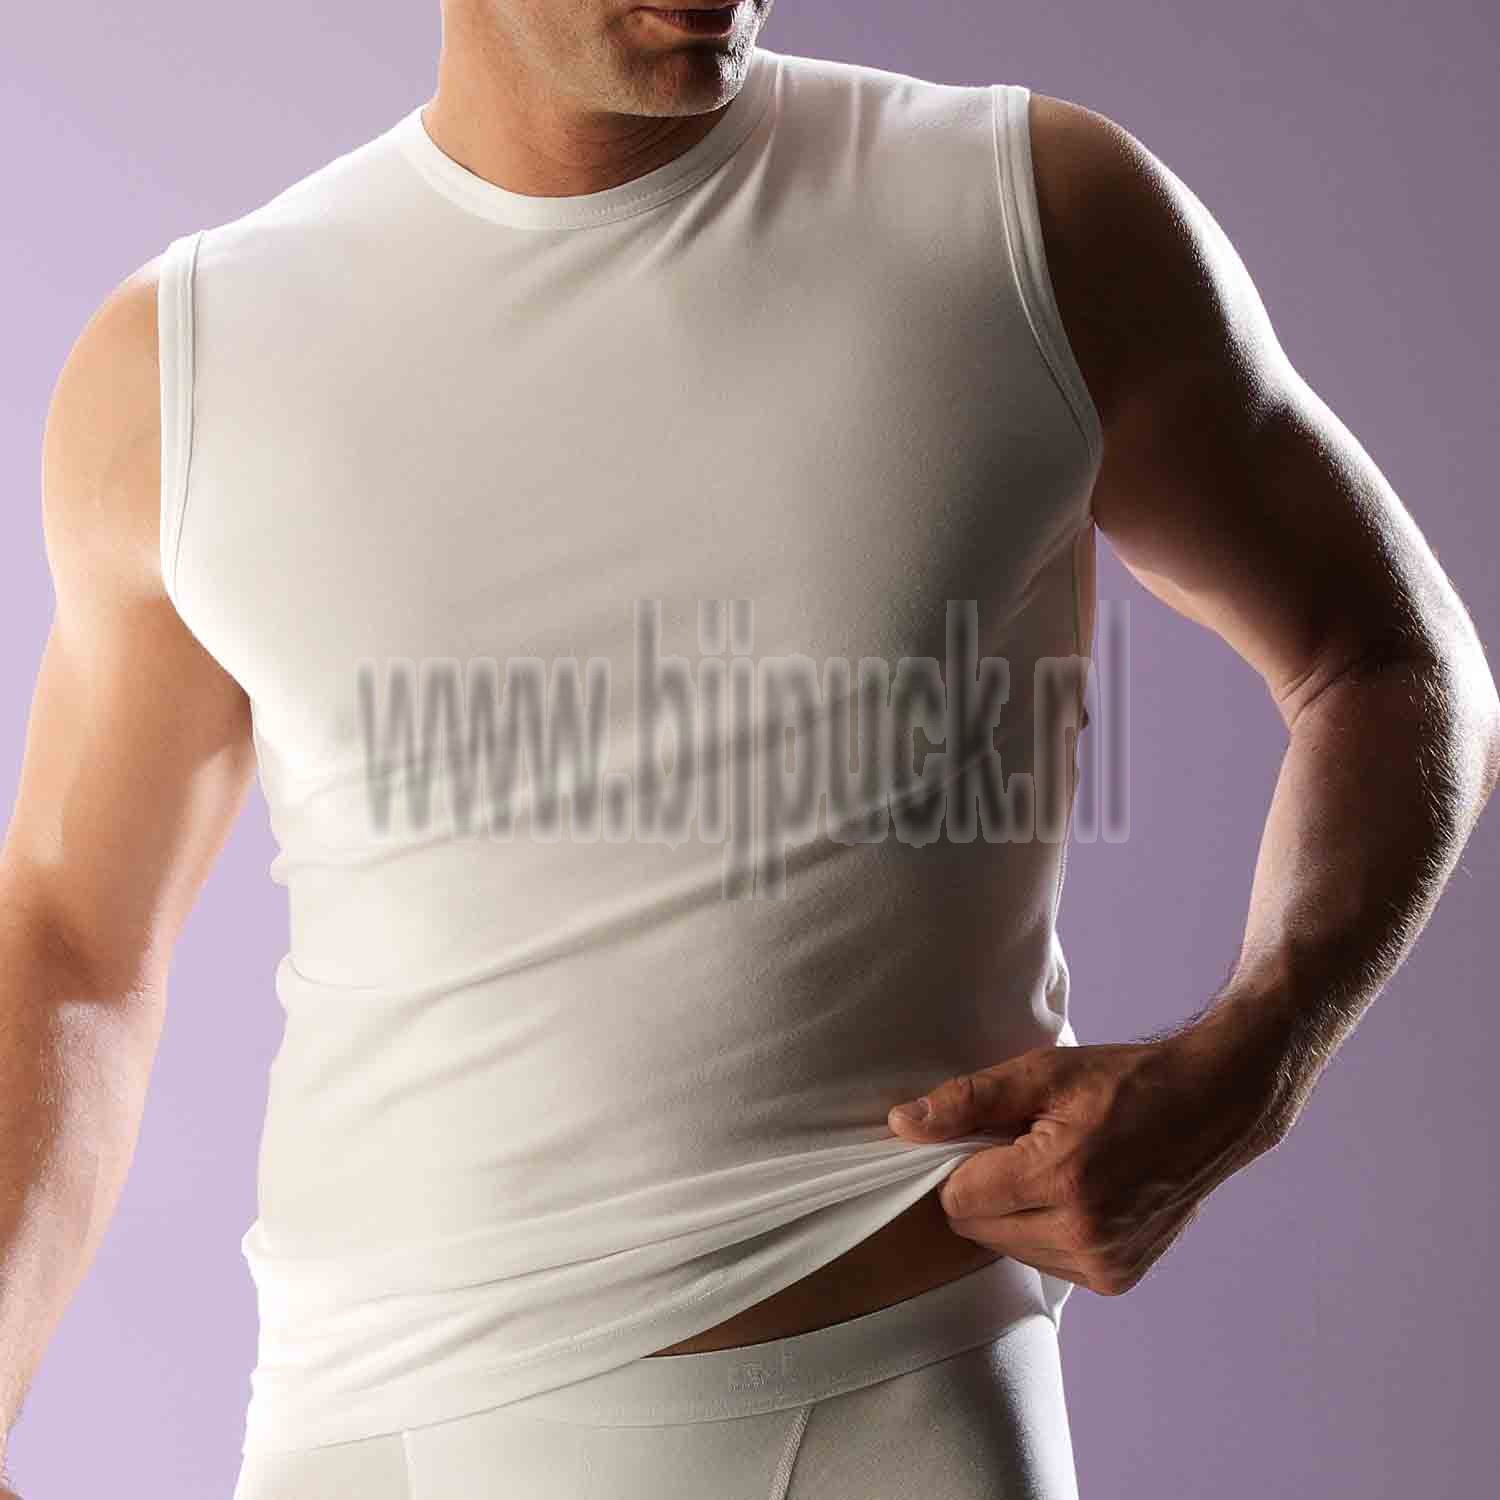 Kruis aan Voorkomen Duplicatie RJ Bodywear, heren mouwloos shirt